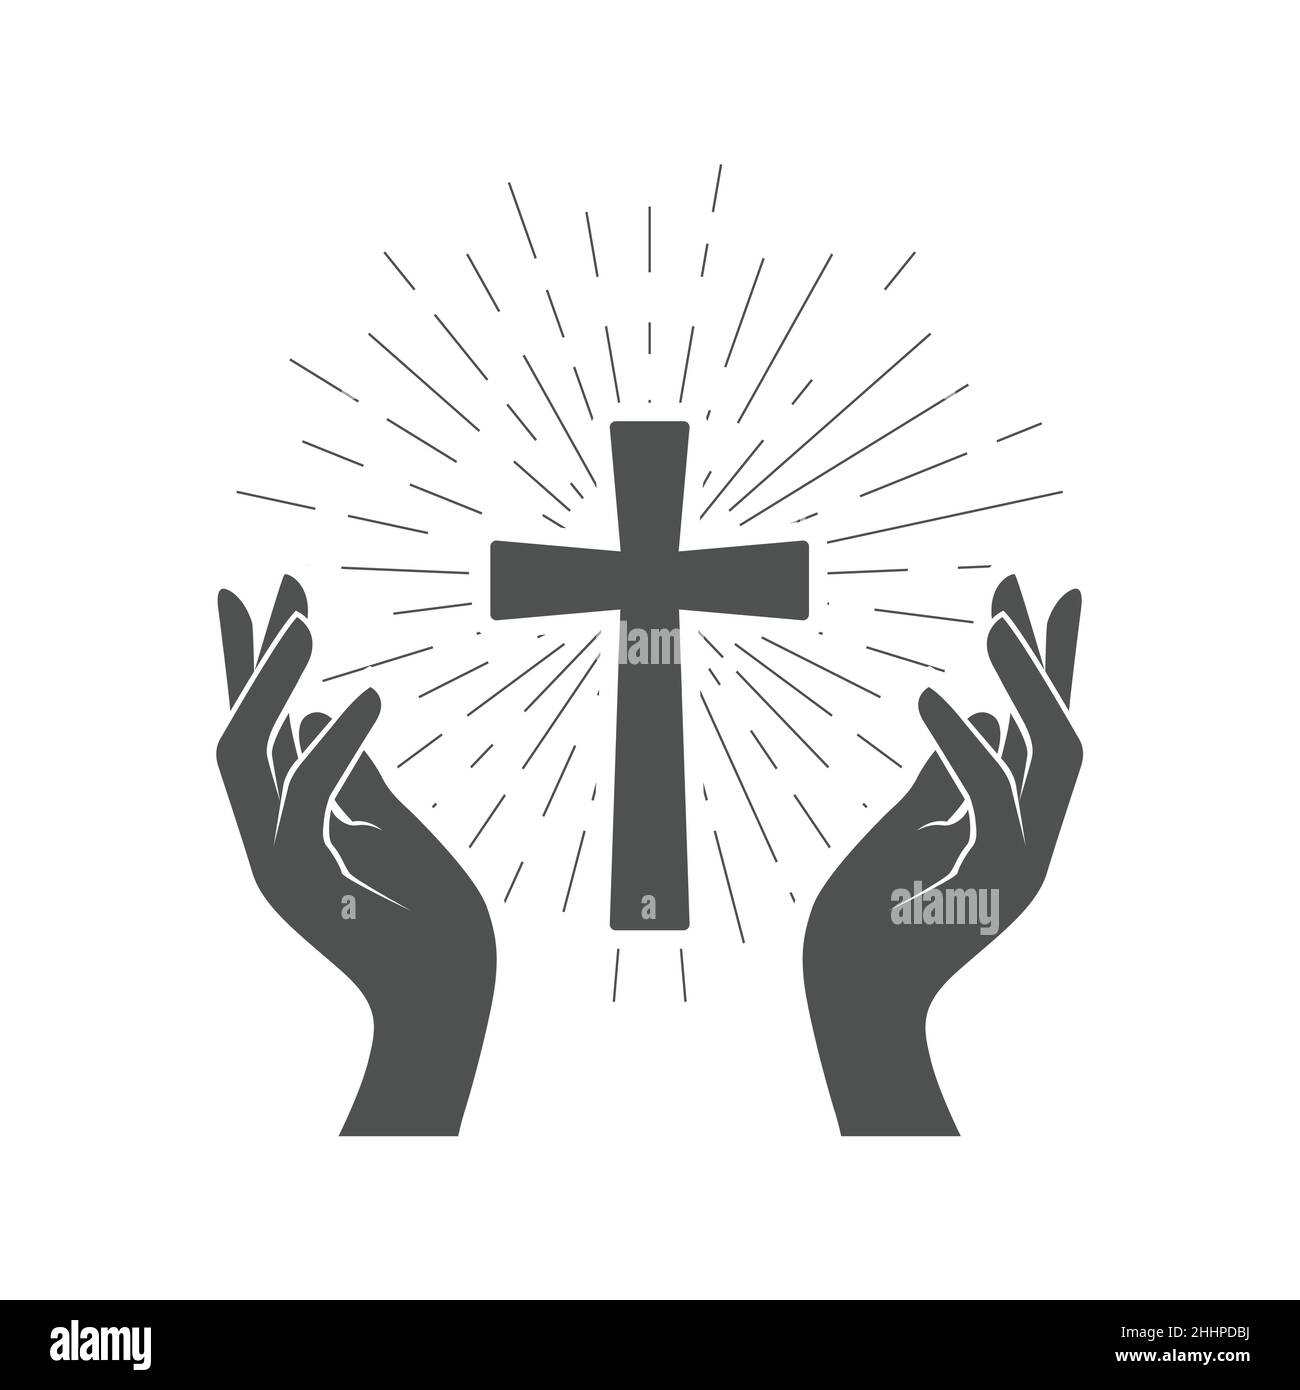 Gebet Symbol, leuchtendes Kruzifix und Hände des Gläubigen, heilige Kreuzverehrung, Vektor Stock Vektor